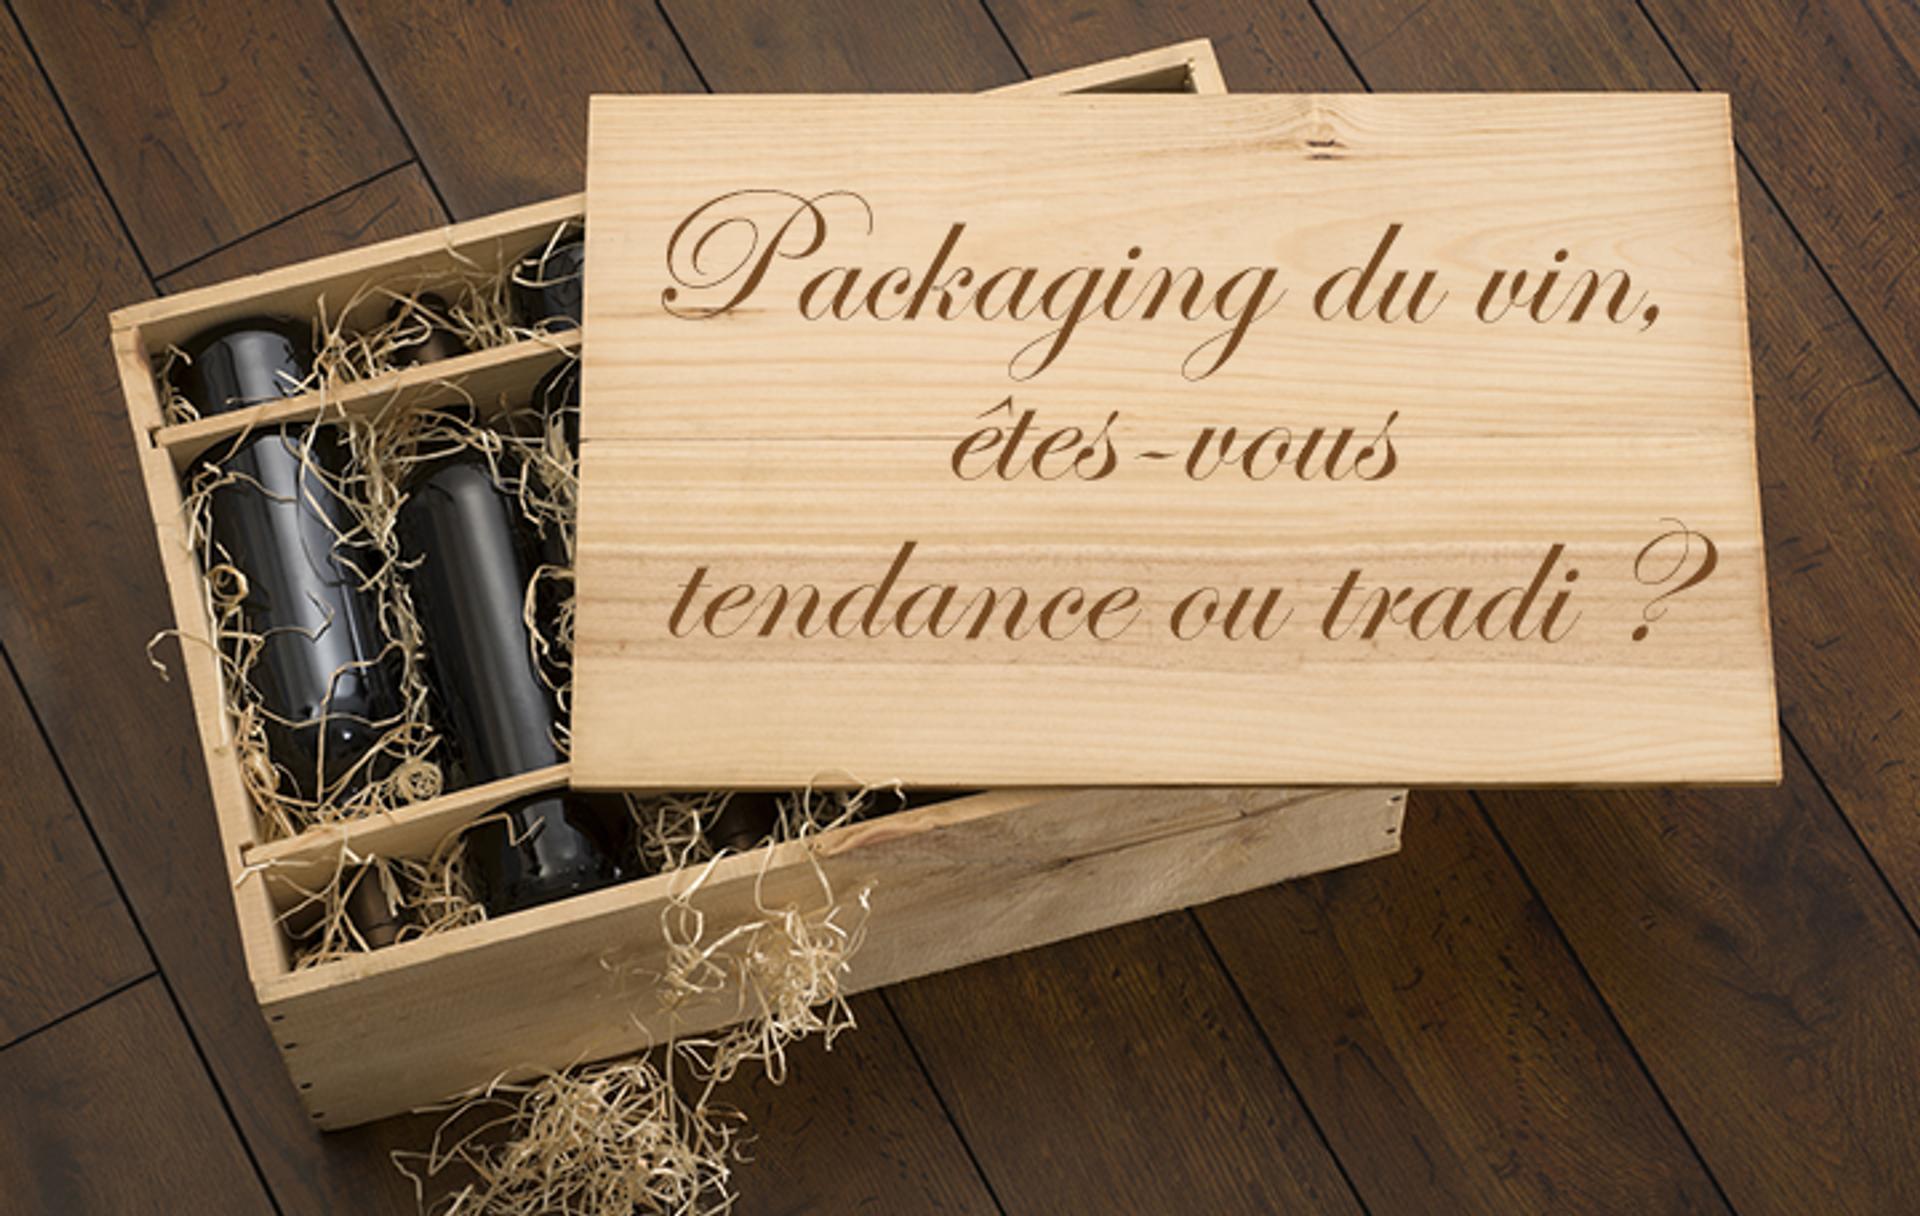 Packaging du vin, êtes-vous tendance ou tradi ?